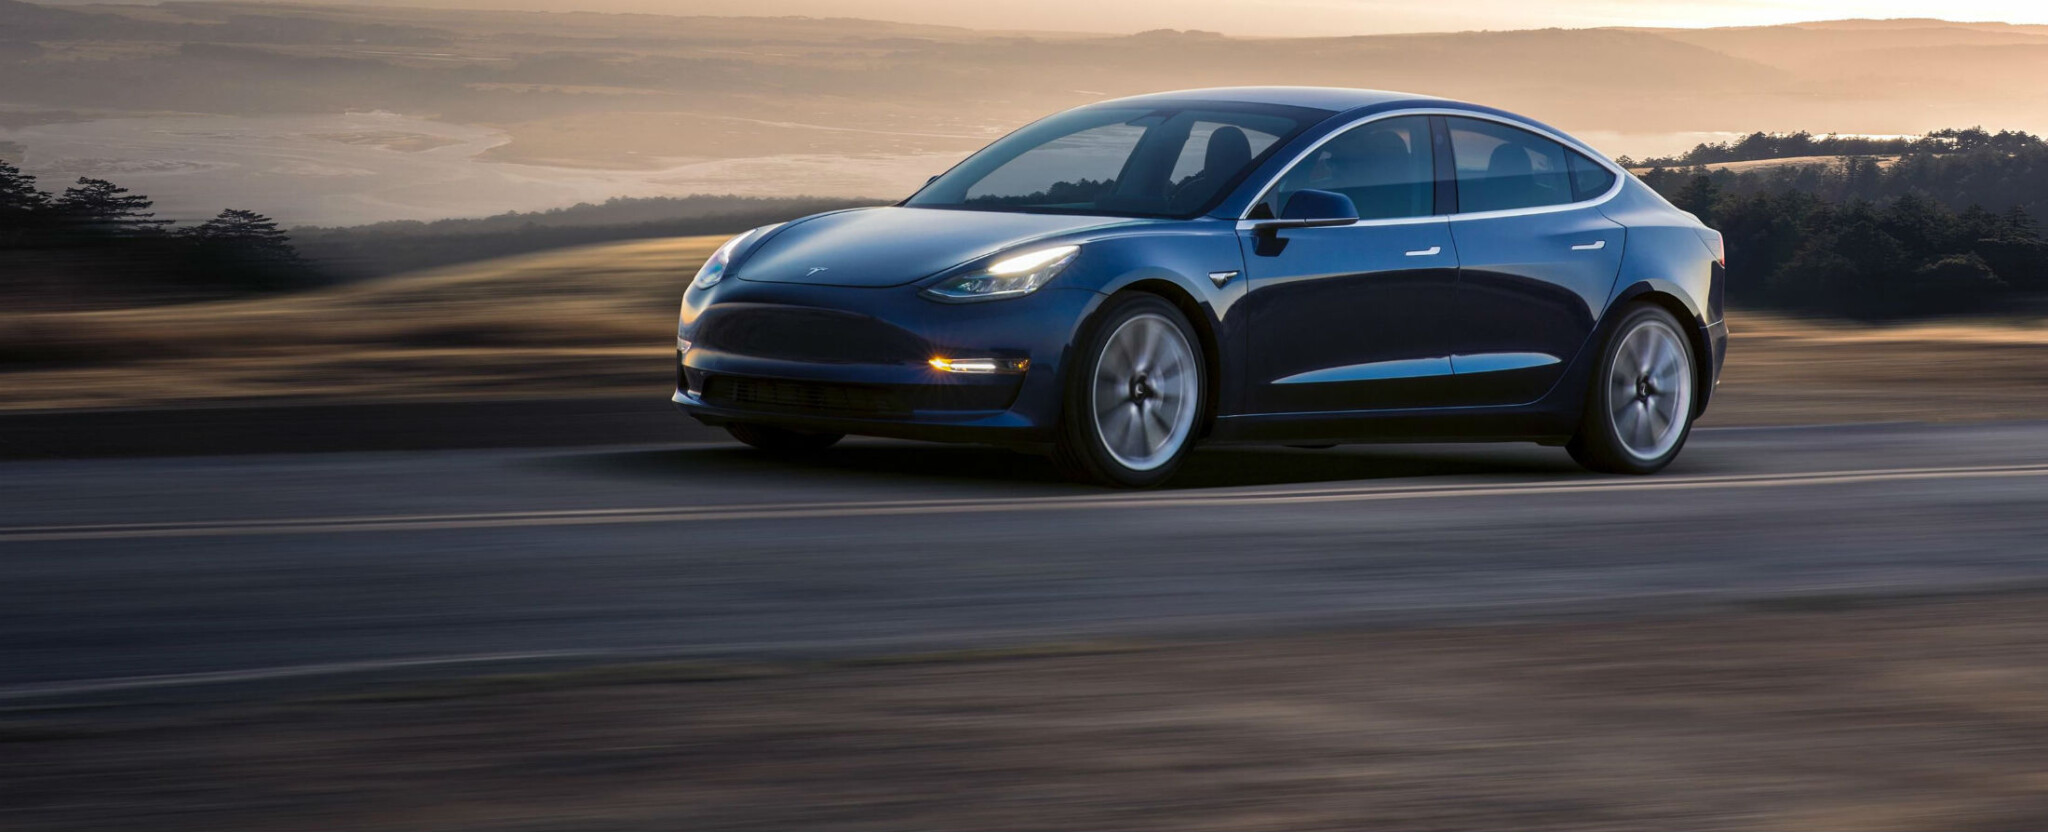 Tesla z burzy: kvůli cash, volným rukám, nebo pompéznímu návratu?